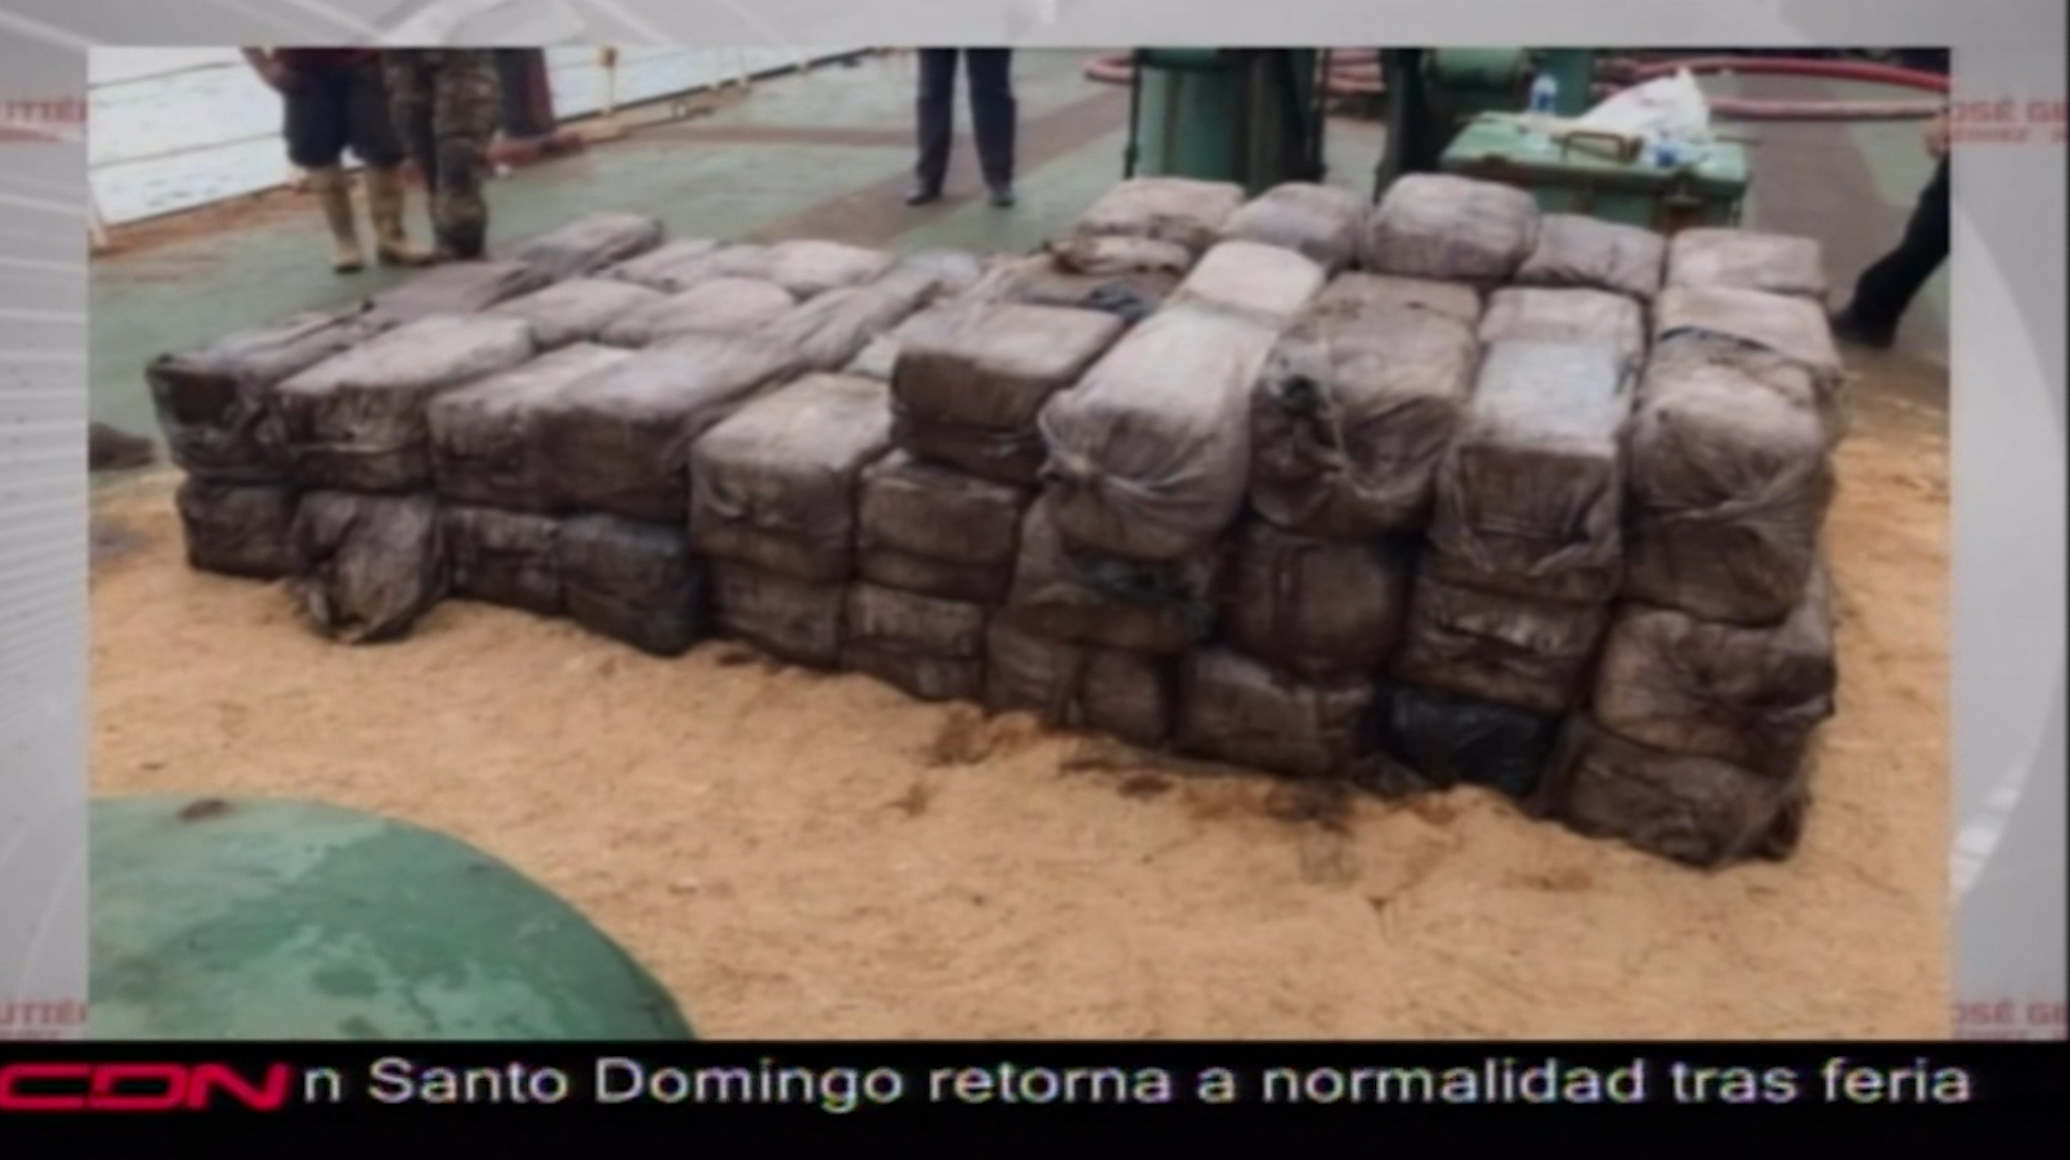 DNCD Incauta 1500 Paquetes De Cocaína En Buque Sospechoso